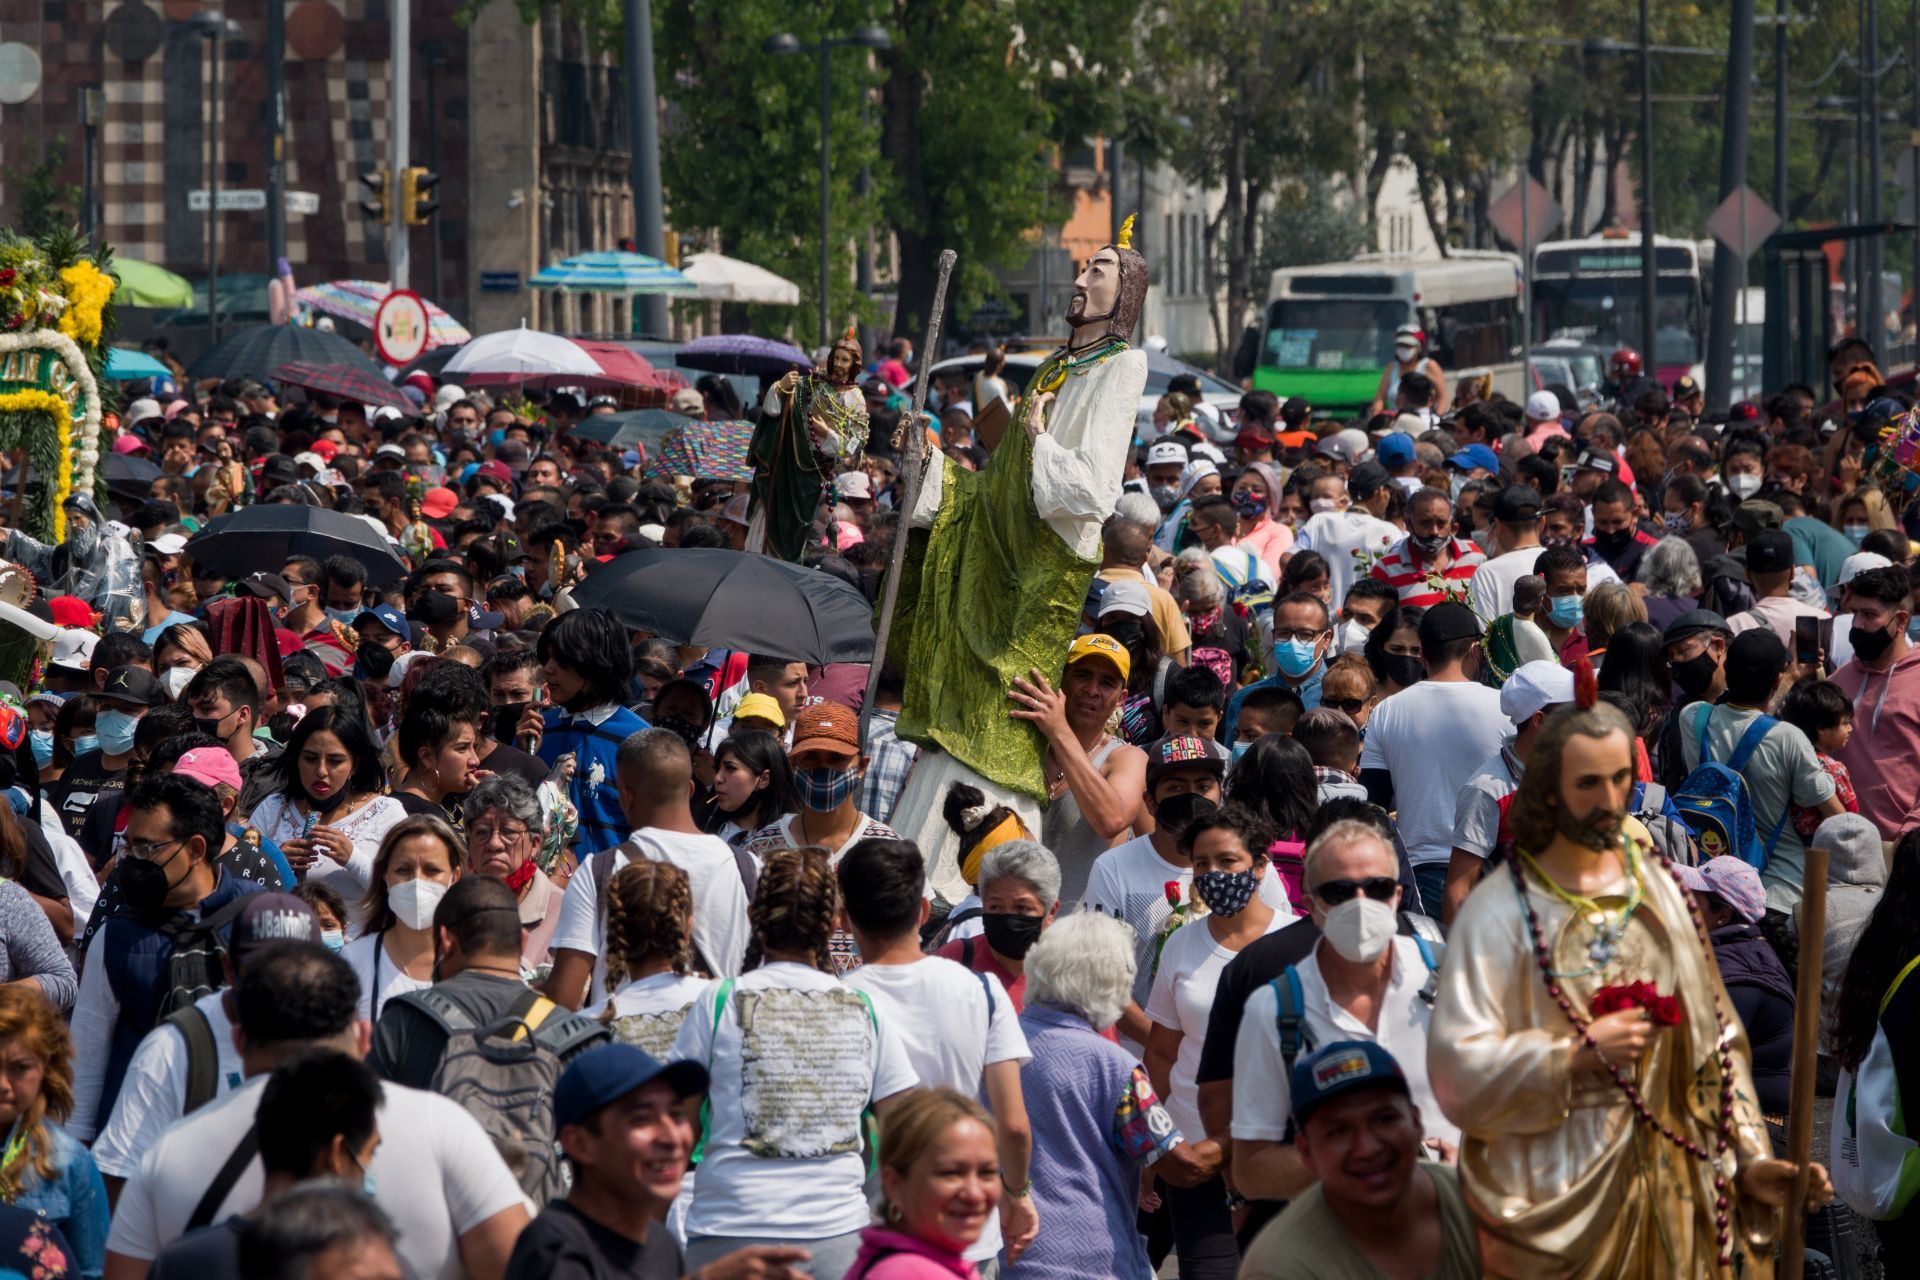 Festejo a San Judas Tadeo, la mayor concentración en CDMX desde el inicio de la pandemia